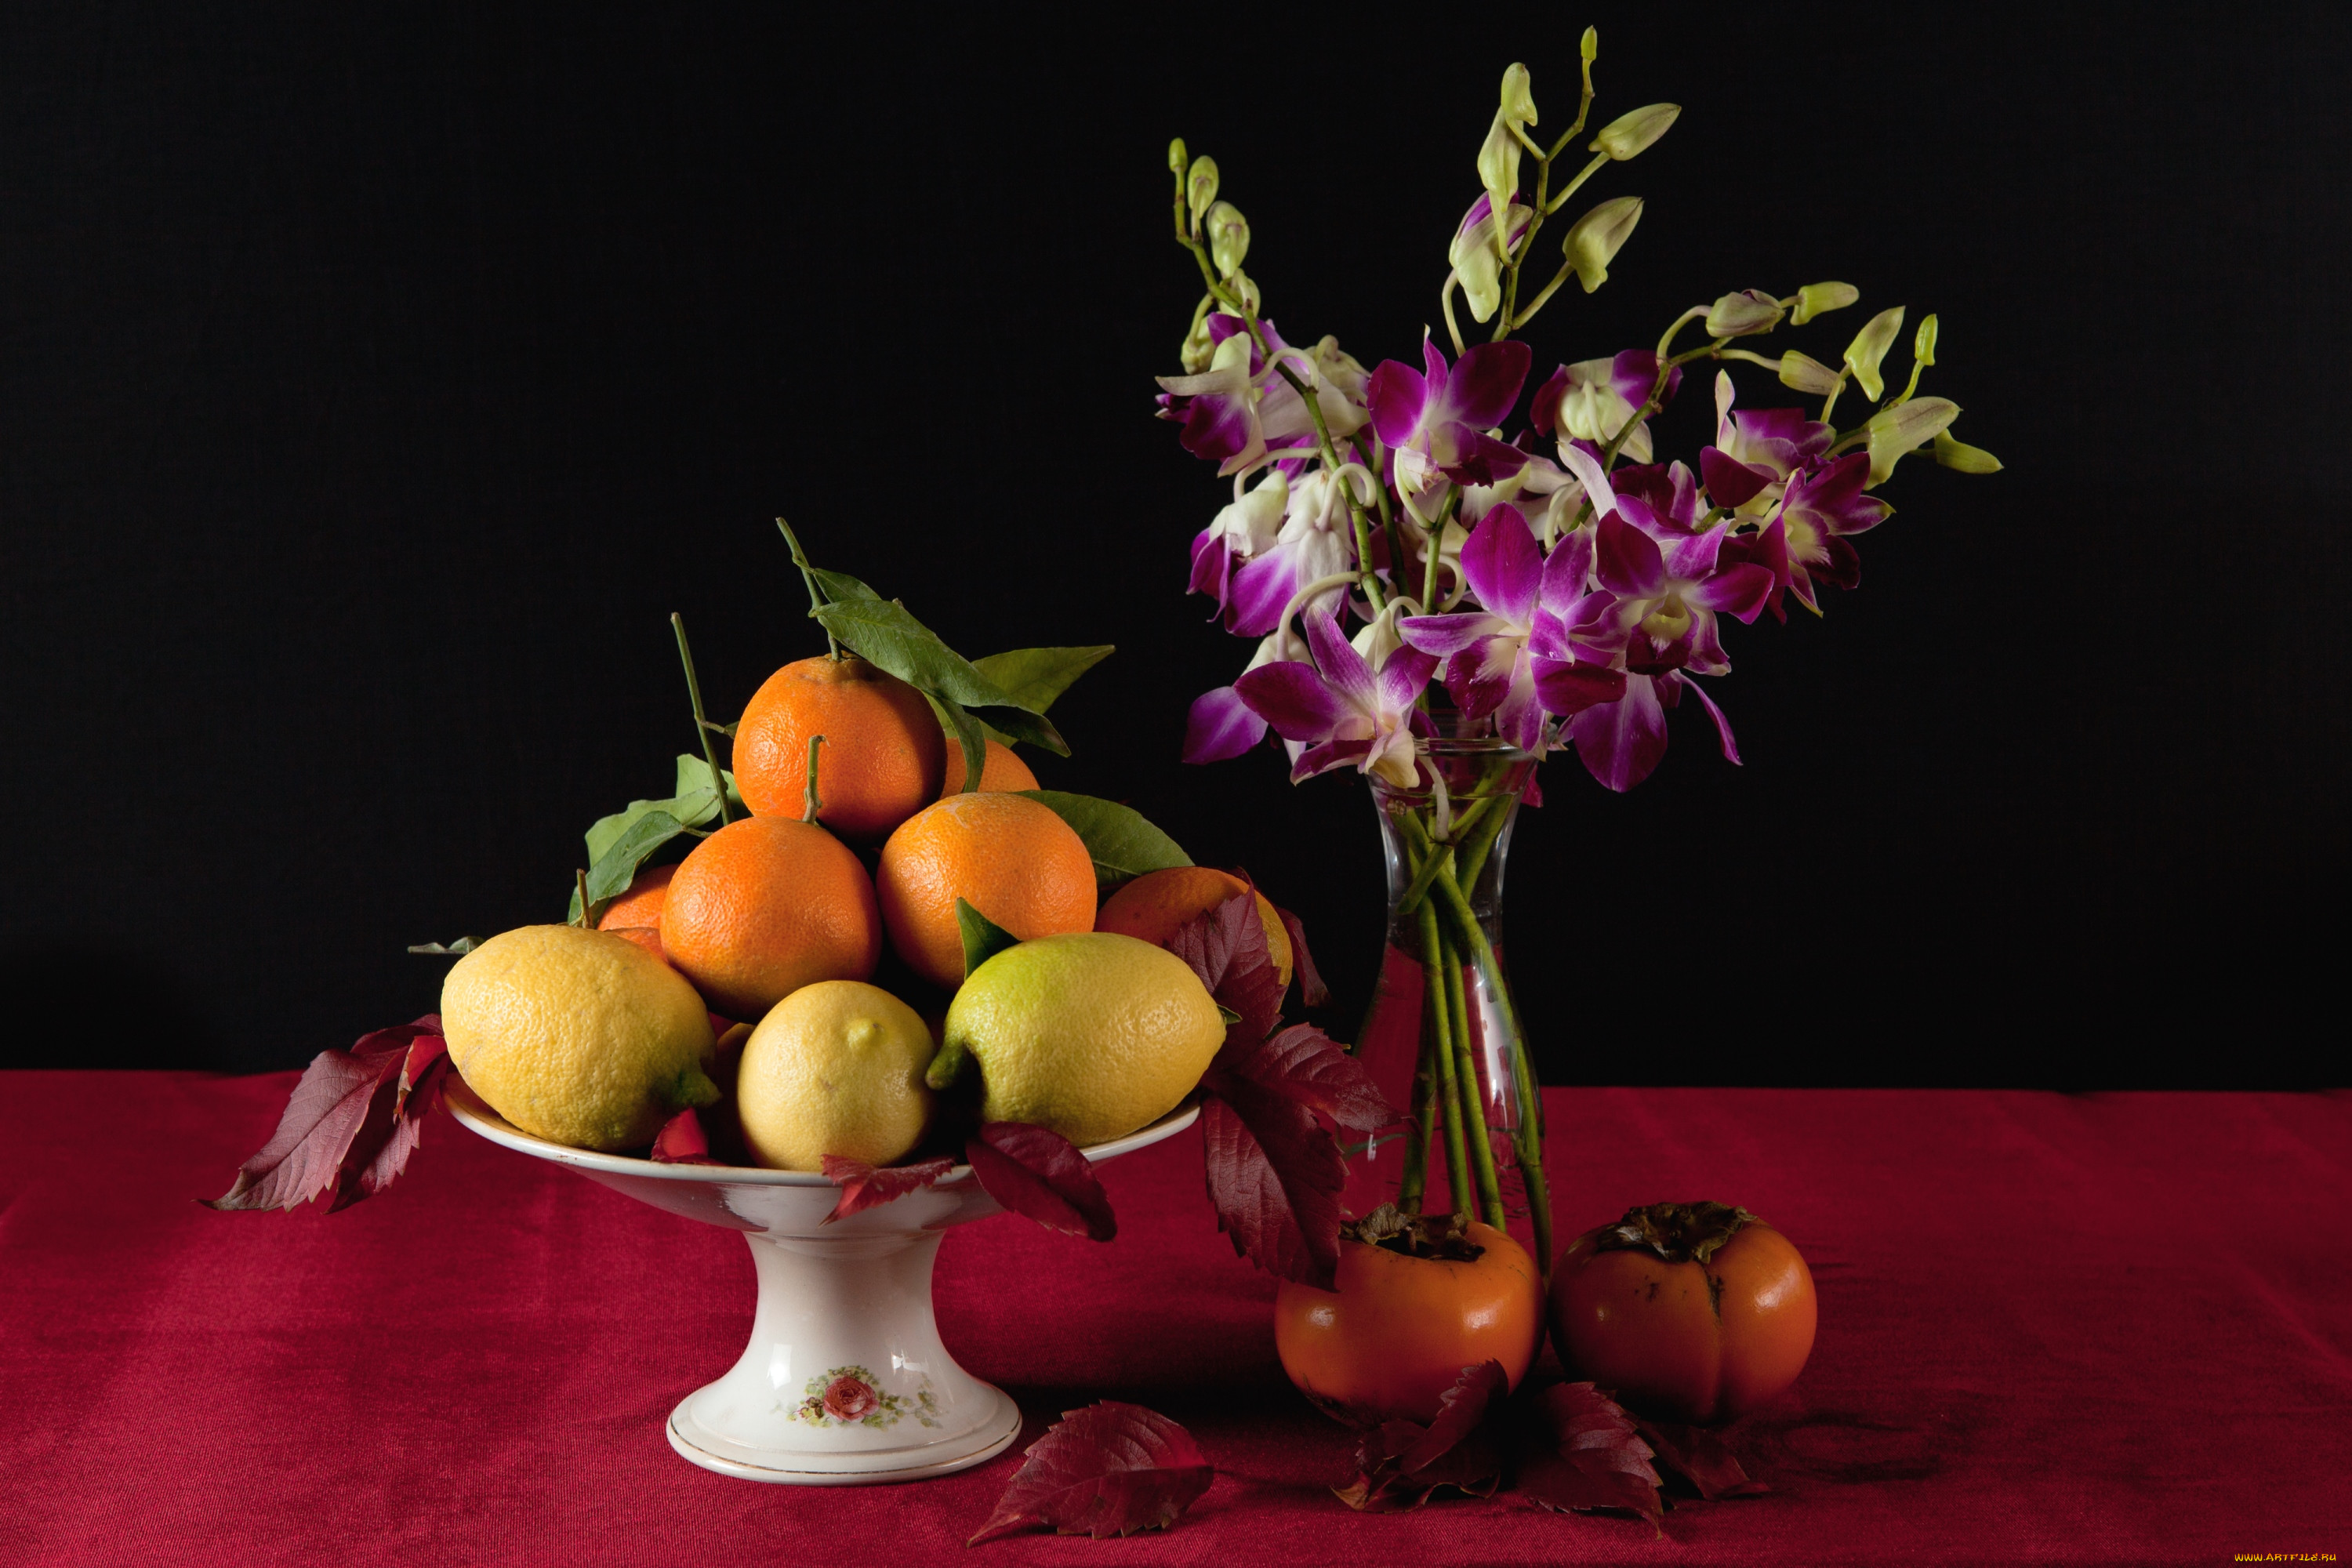 В вазе лежат 4 разных фрукта. Натюрморт с фруктами. Натюрморт с цветами и фруктами. Цветочно фруктовый натюрморт. Ваза с фруктами.